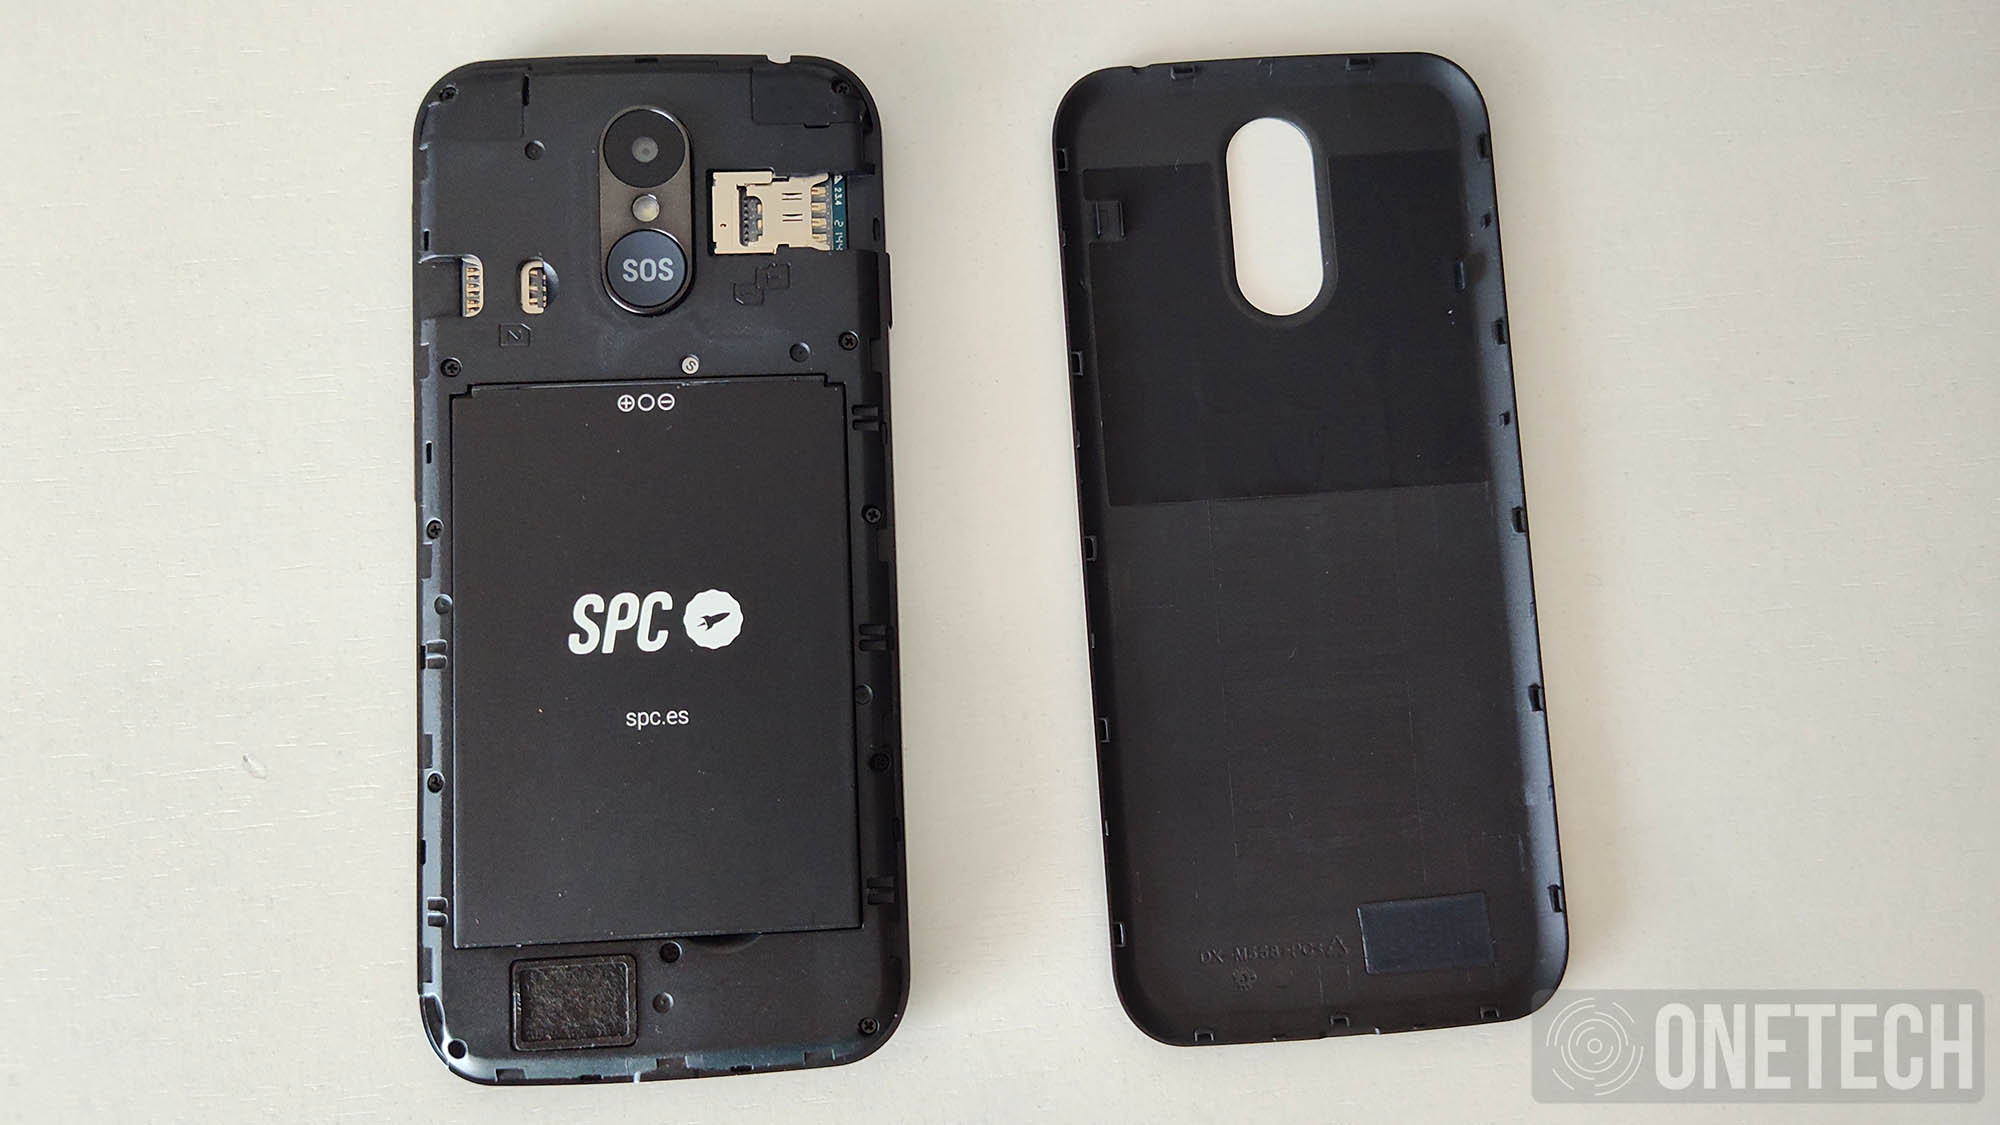 SPC Zeus 4G Pro, probamos el nuevo smartphone para mayores de SPC - Análisis 28